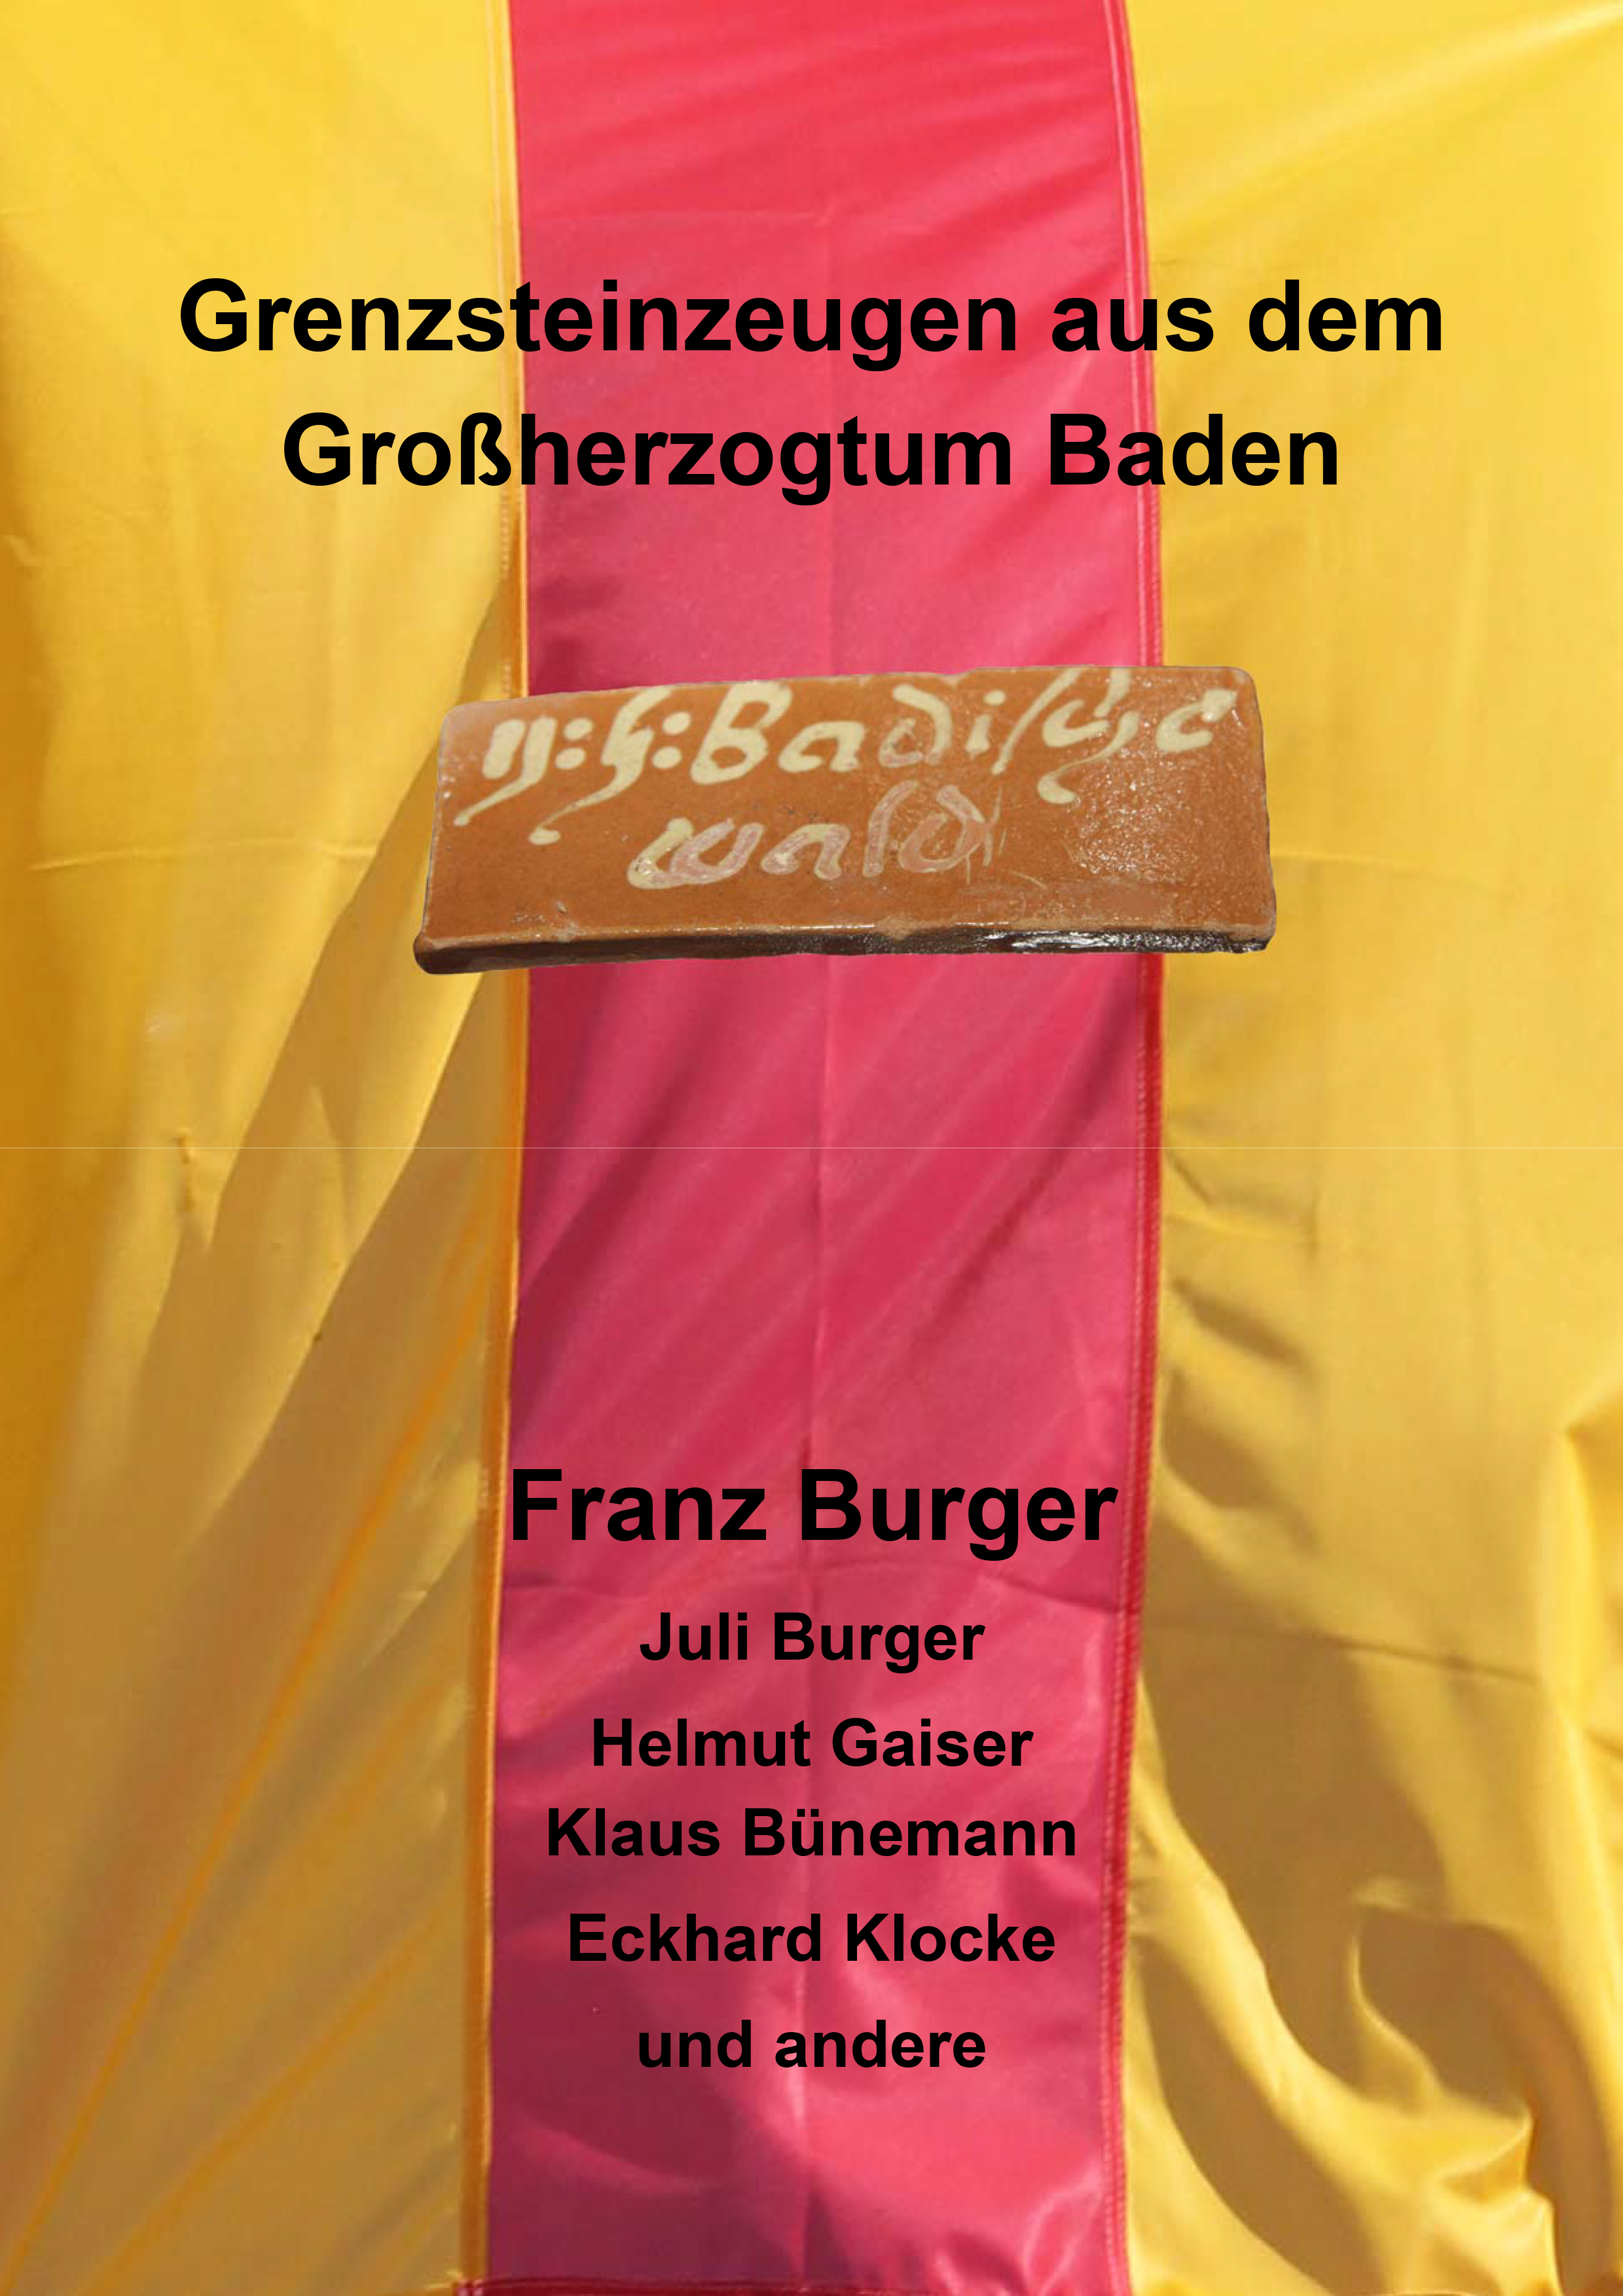 Grenzsteinzeugen im Großherzogtum Baden von Franz und Juli Burger